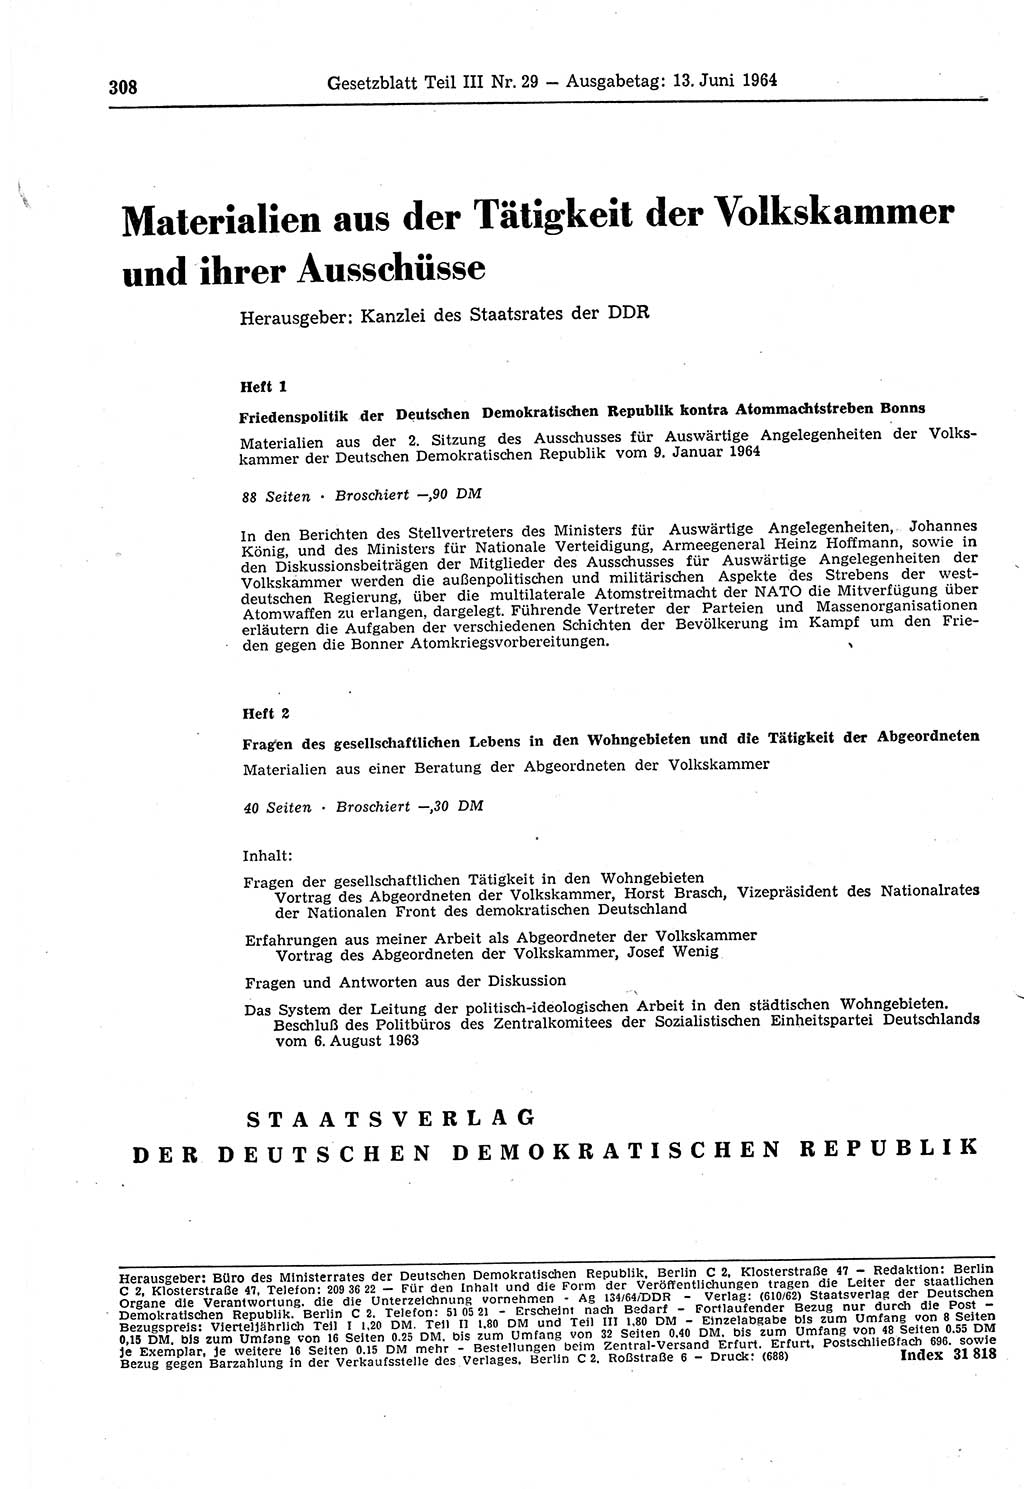 Gesetzblatt (GBl.) der Deutschen Demokratischen Republik (DDR) Teil ⅠⅠⅠ 1964, Seite 308 (GBl. DDR ⅠⅠⅠ 1964, S. 308)